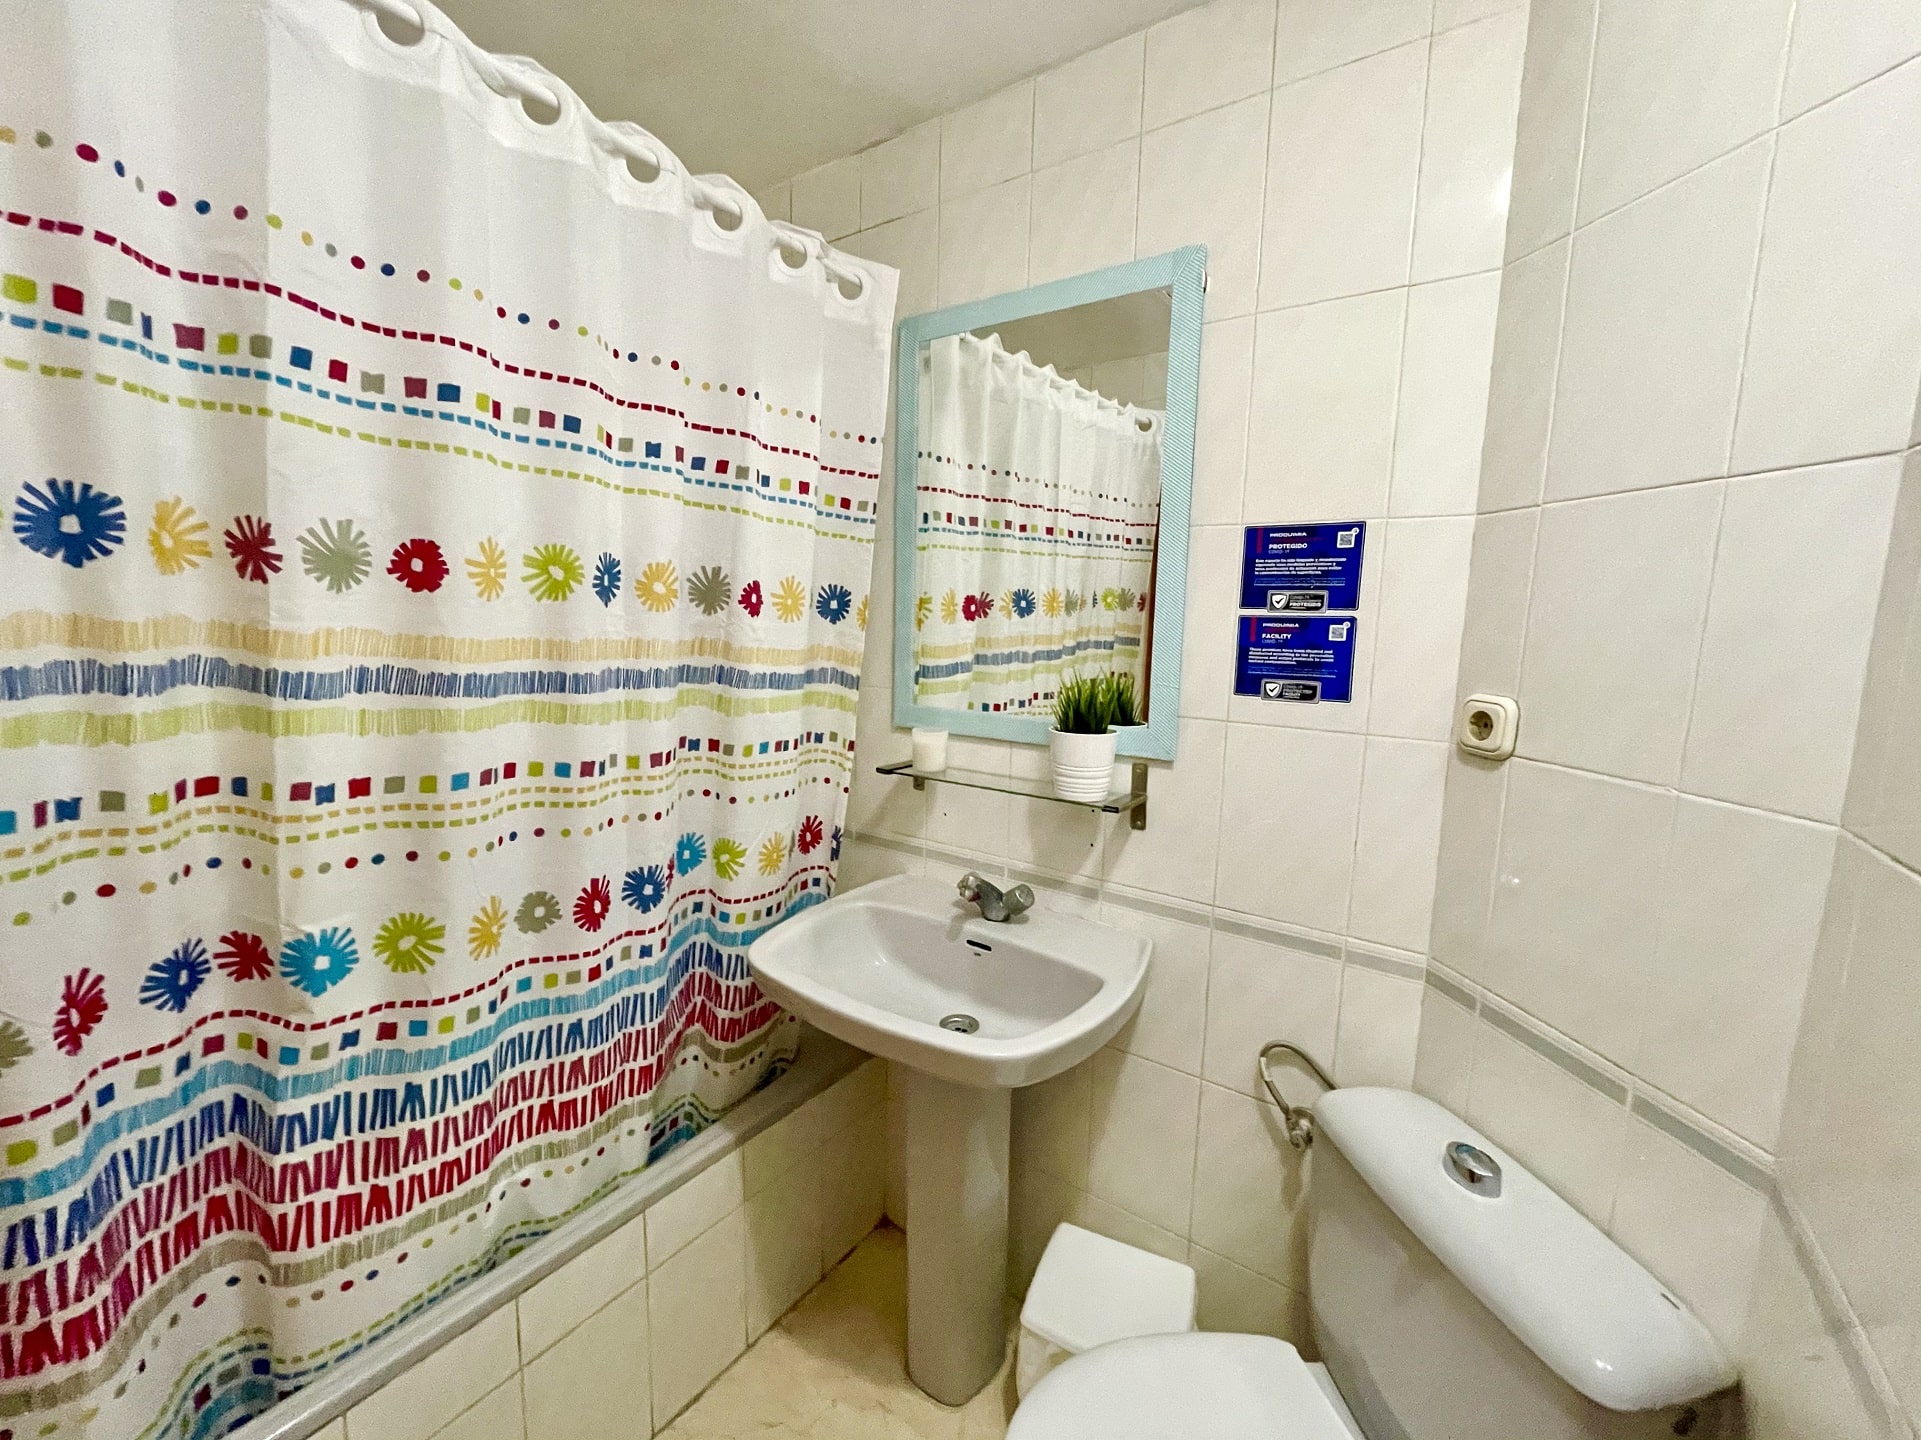 baño-equipado-full-equiped-bathroom-min